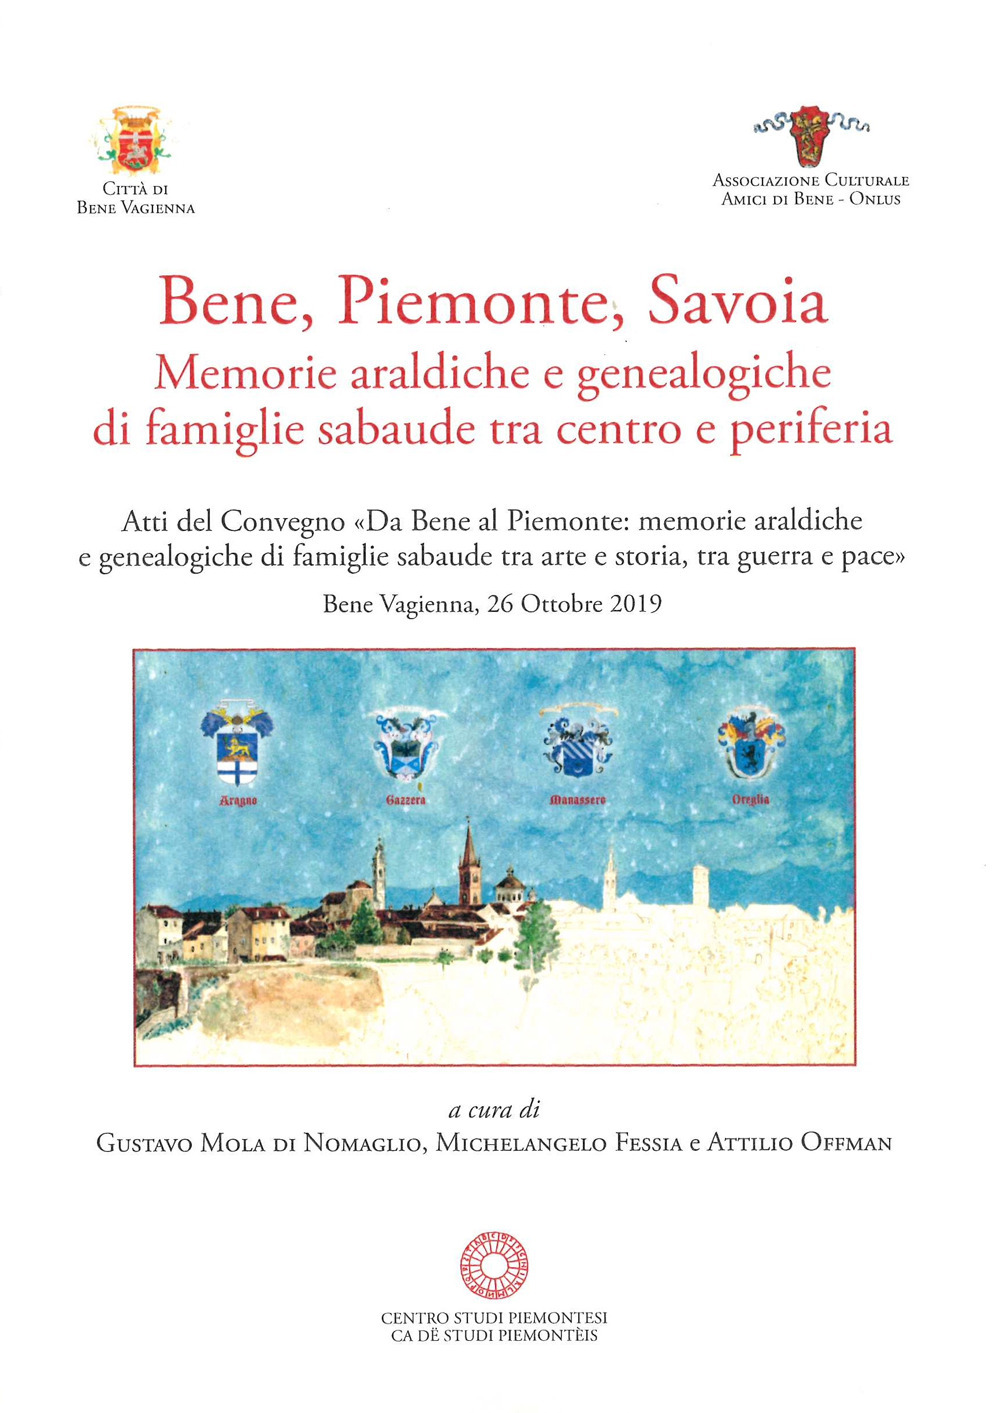 Bene, Piemonte, Savoia. Memorie araldiche e genealogiche di famiglie sabaude tra centro e periferia